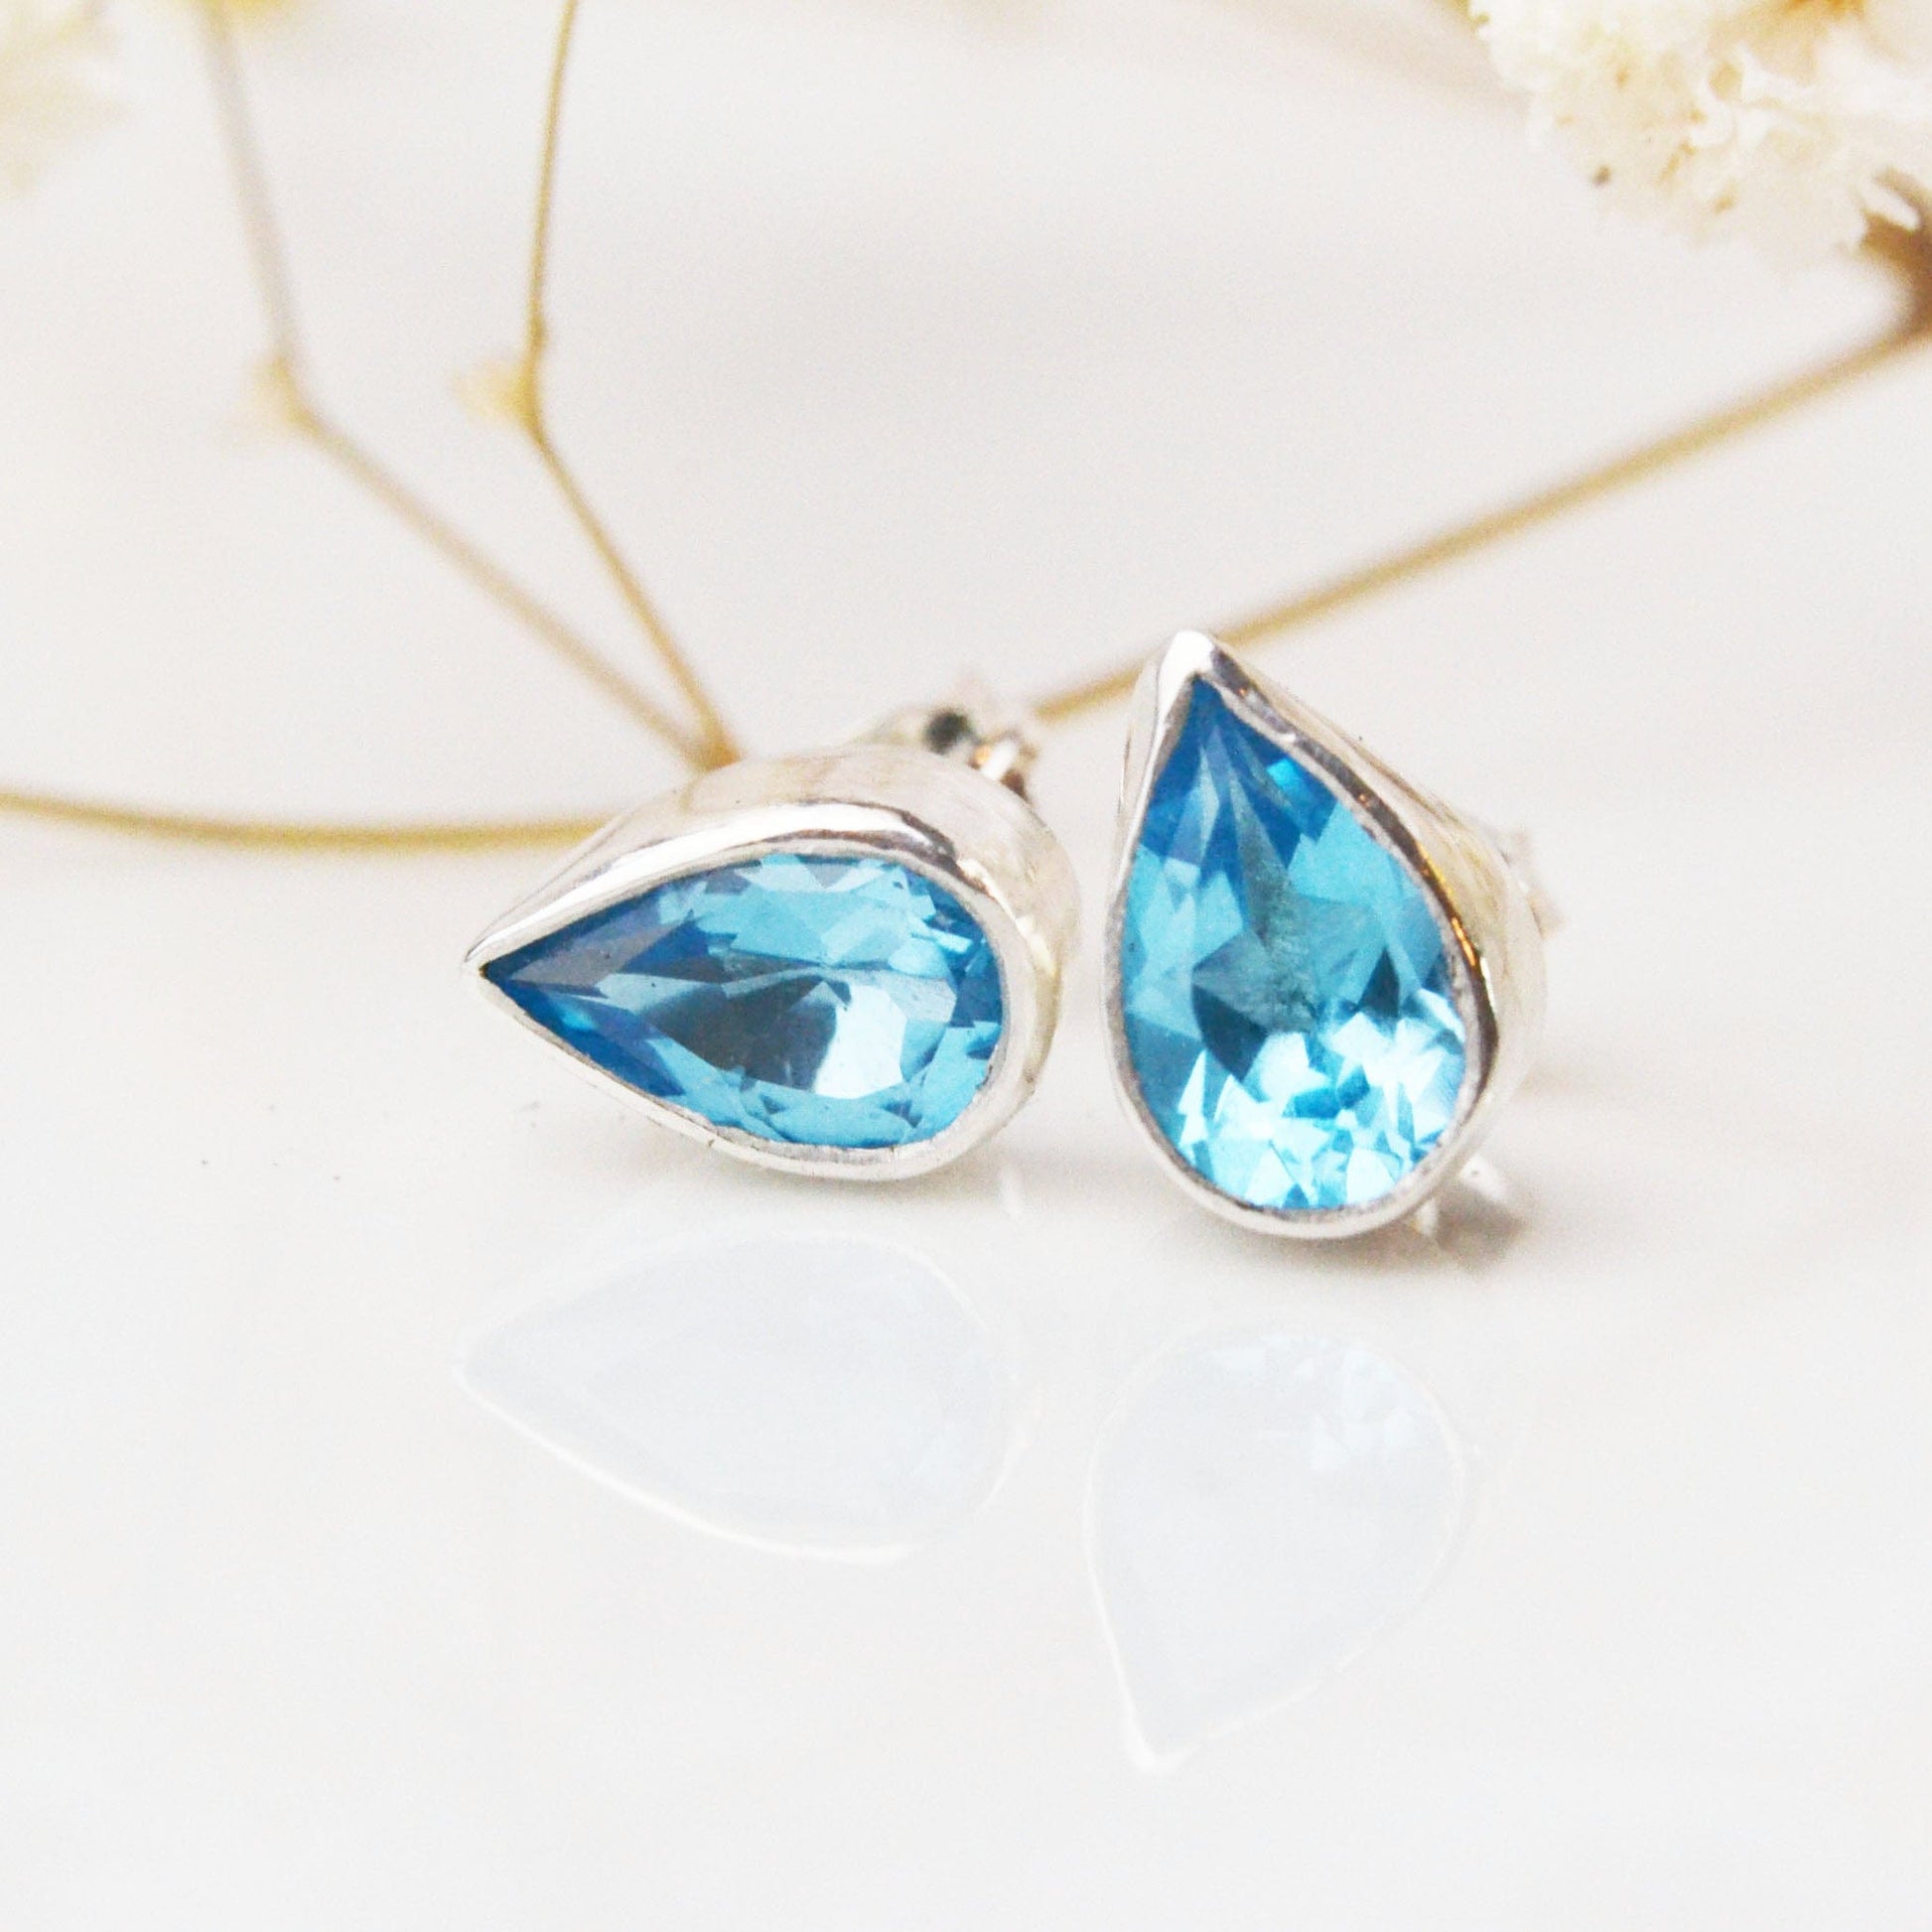 Becky Pearce Designs Earrings 6x4mm / December - Swiss blue topaz Pear, or drop shaped gemstone stud earrings